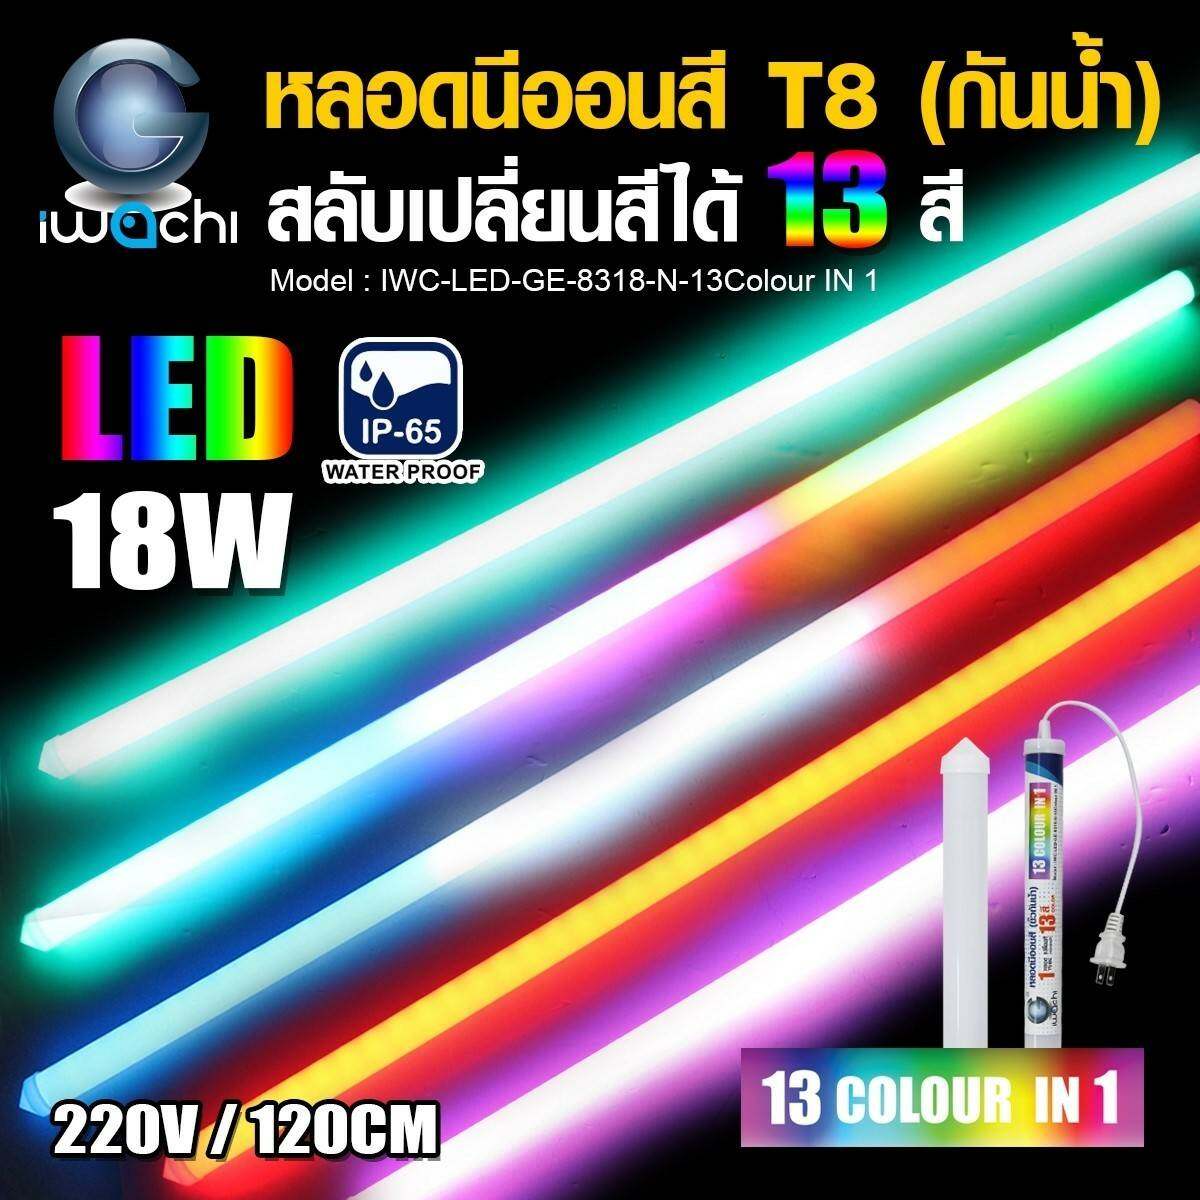 หลอดไฟLEDสี 18W. กันน้ำ สลับเปลี่ยนสีได้ 13สี ในหลอดเดียว 220V. ยาว120ซ.ม. (เปลี่ยนสีเองตามคลิปวีดีโอ)